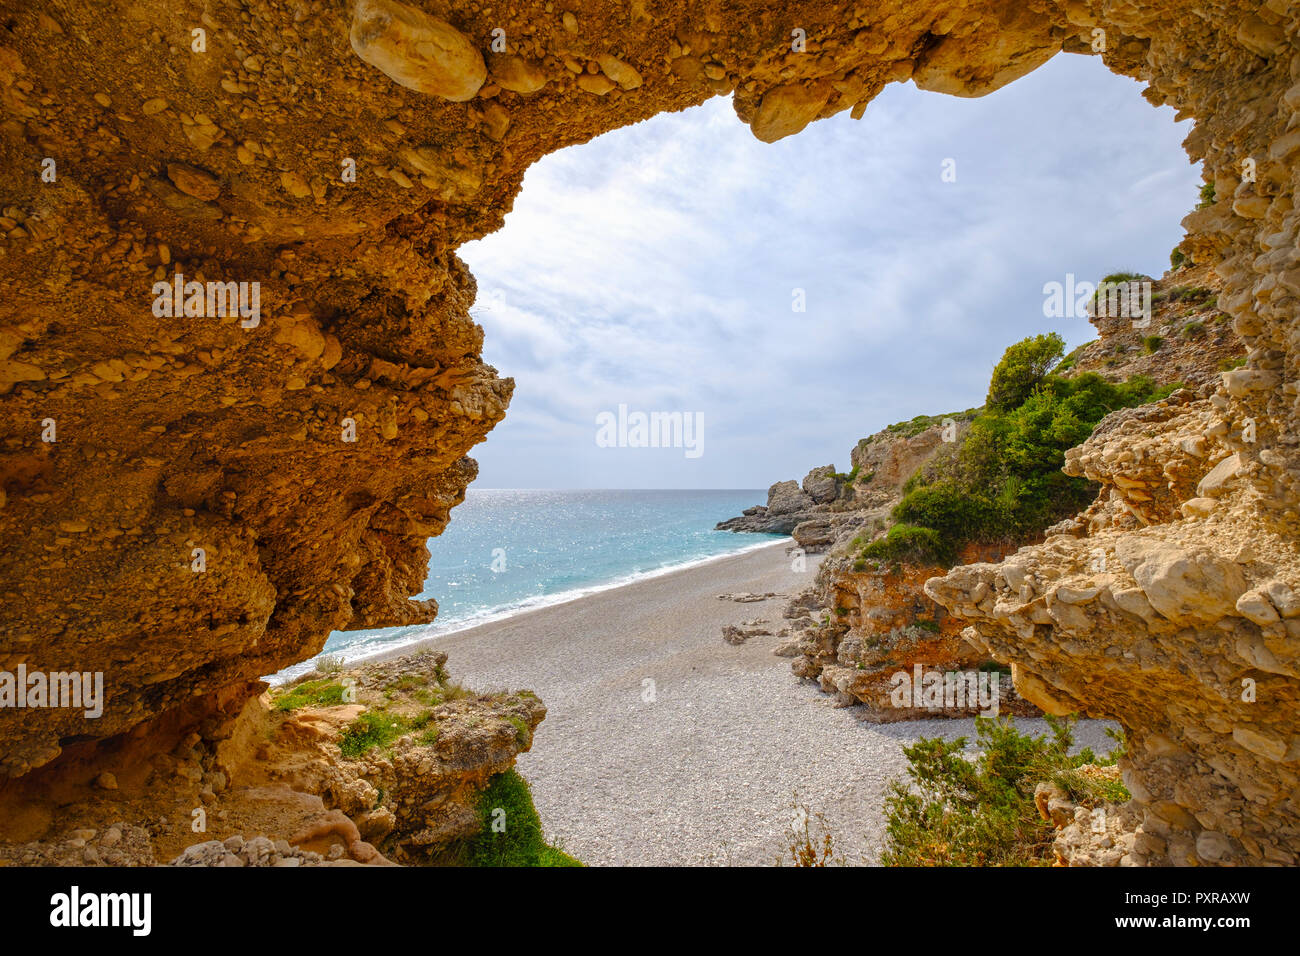 Albanien, Ionean Meer, Albanischen Riviera, rock Arch am Strand von Dhermi Stockfoto